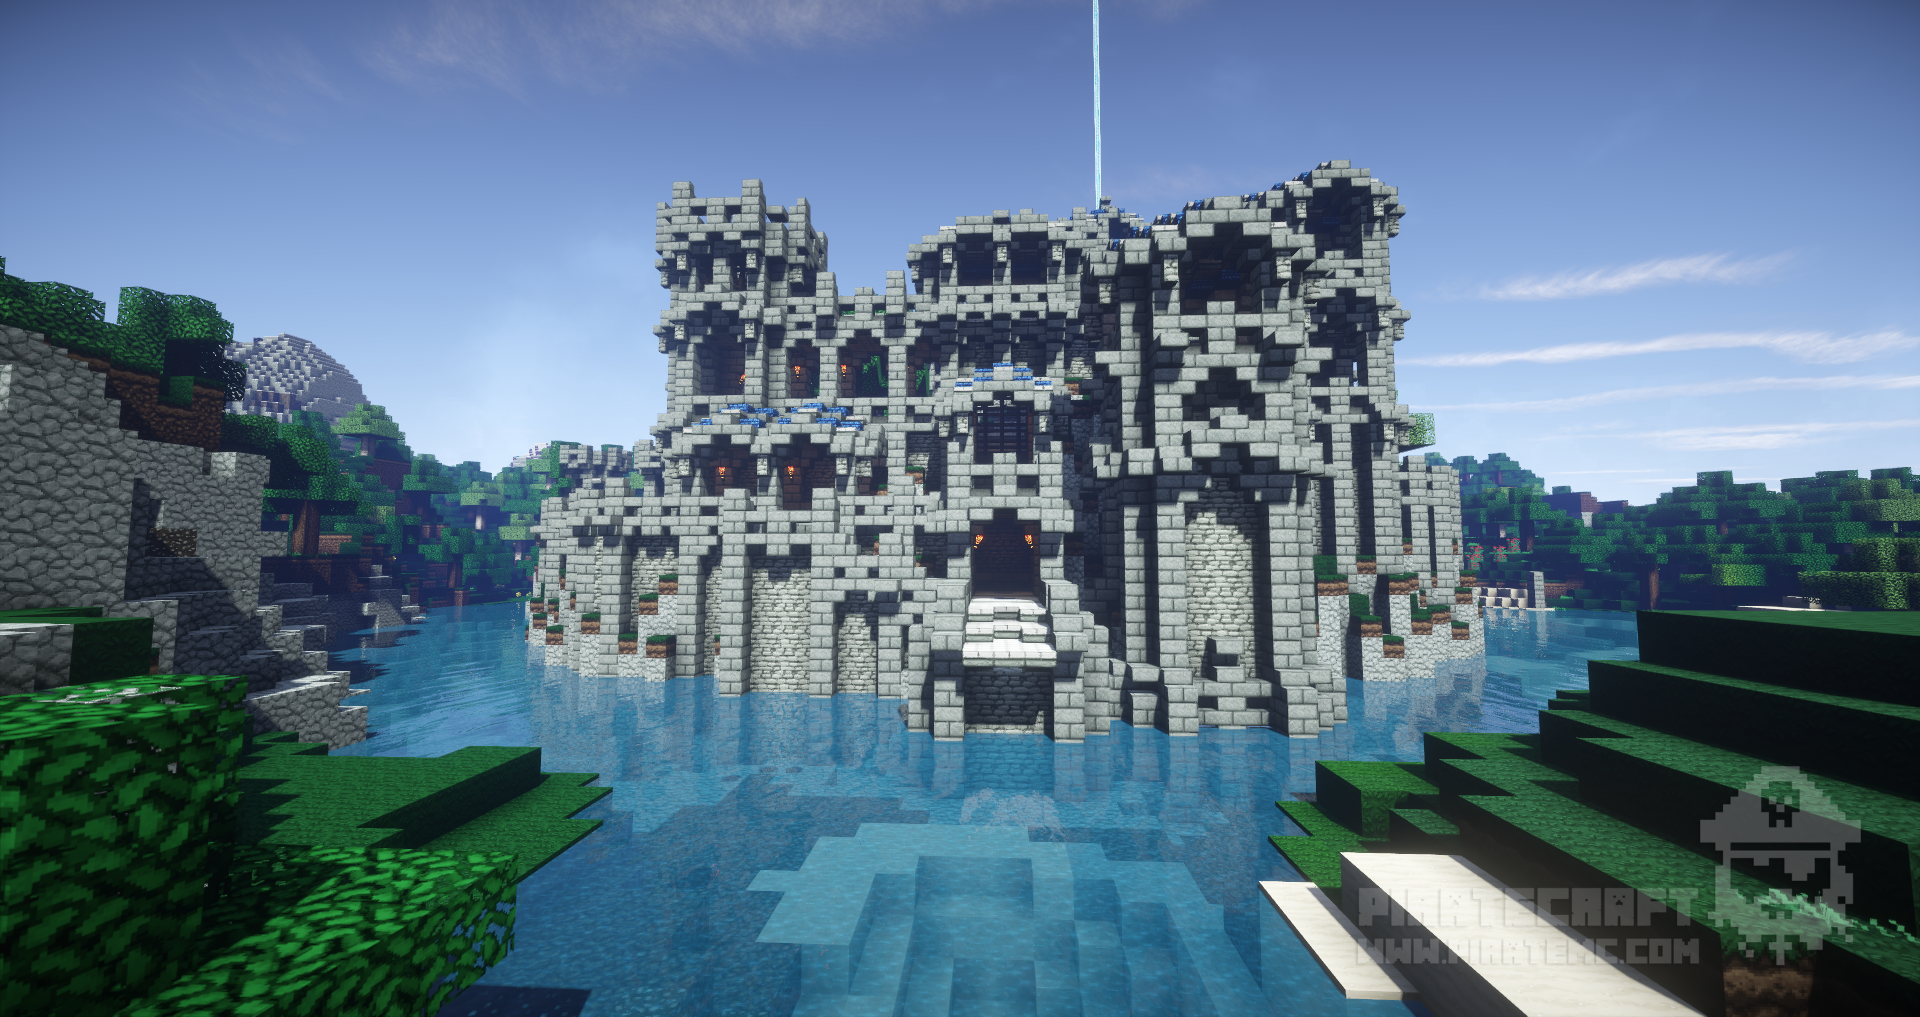 Build: The Citadel